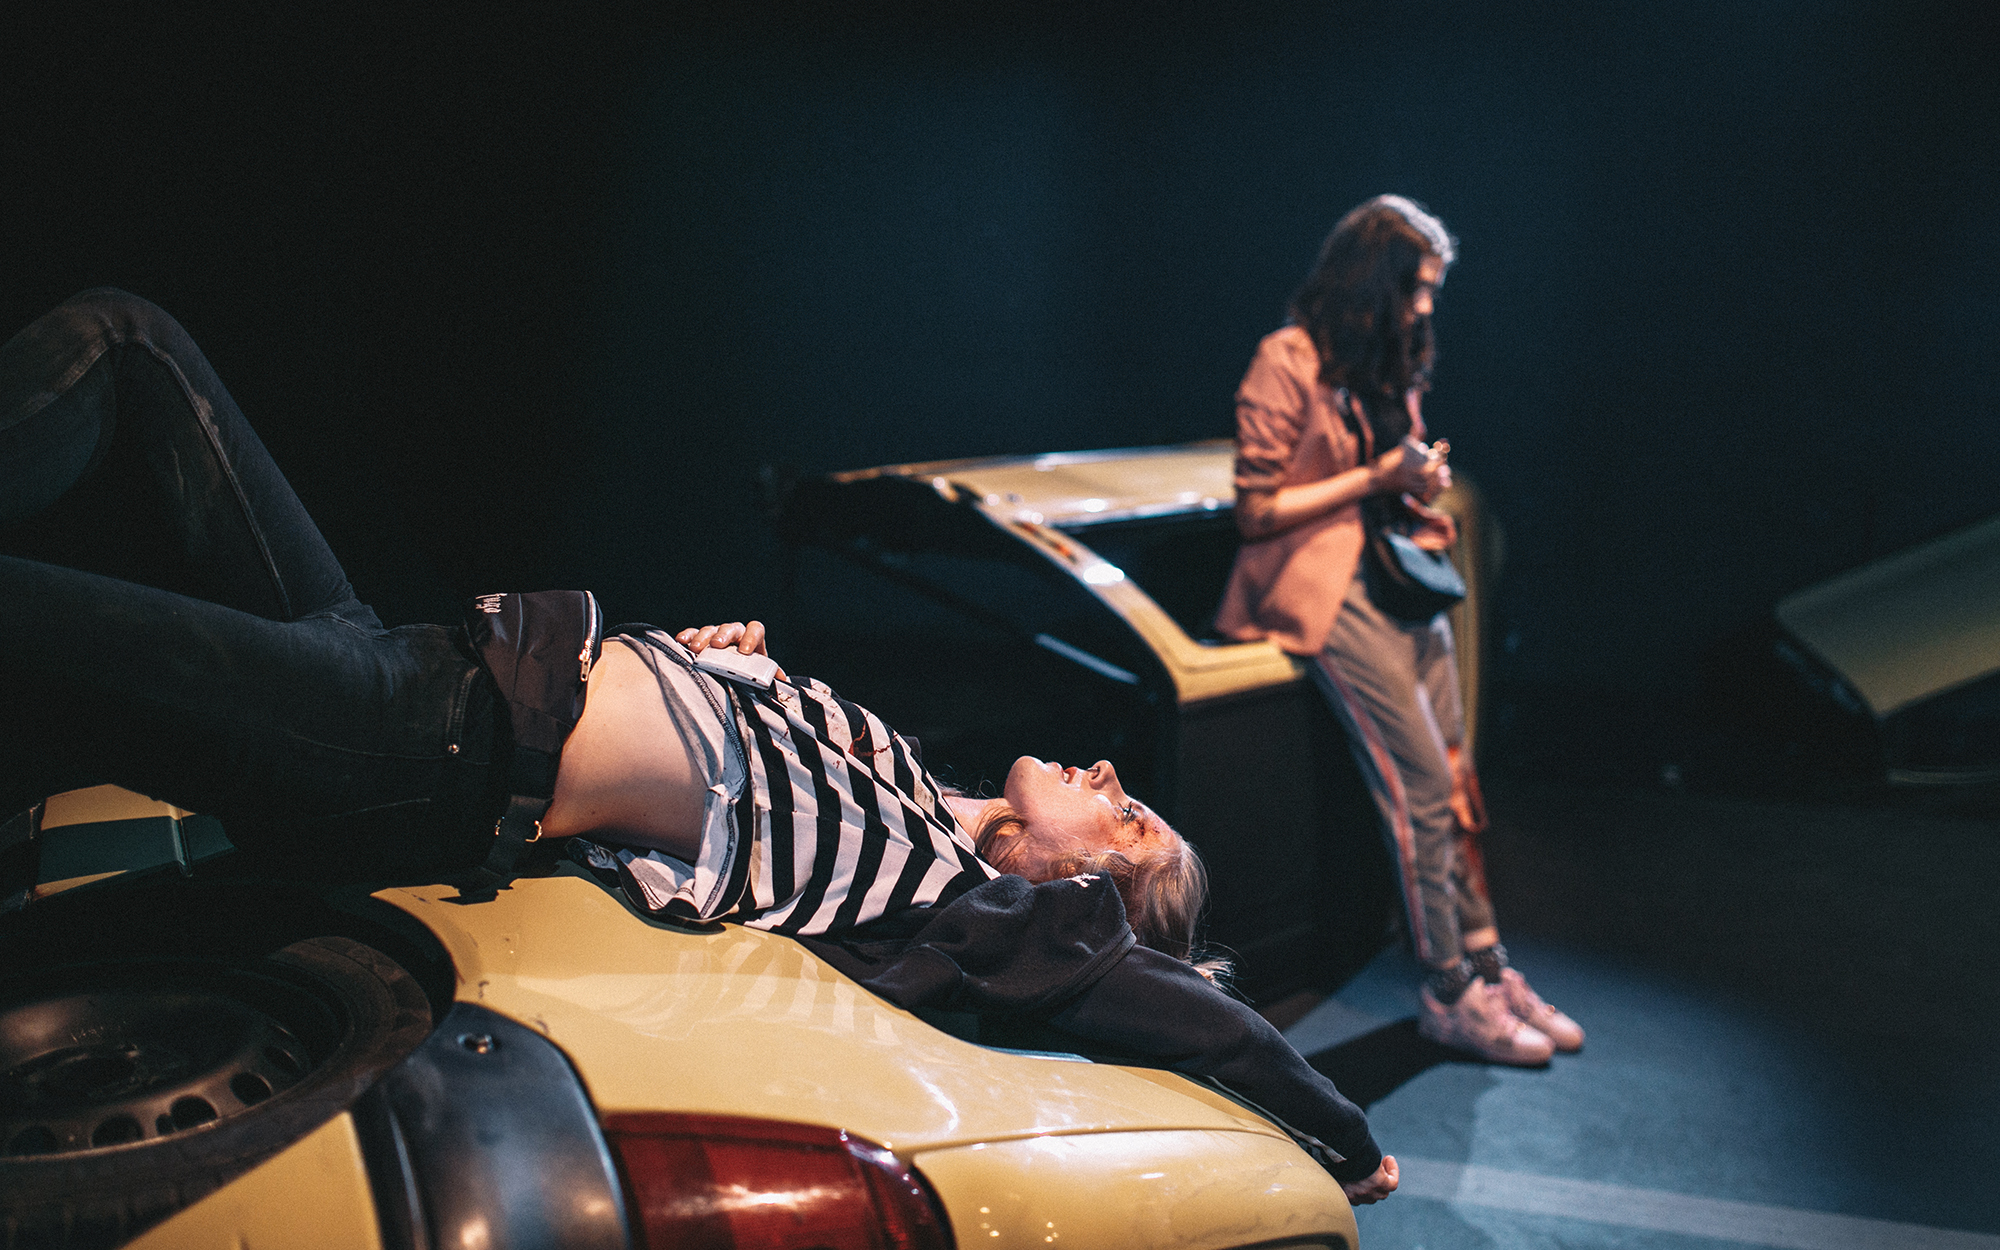 Leni (Lena Hribar Škrlec) z okrvavljenim obrazom leži na delu razbitega avtomobila in se pogovarja z Viktorijo (Anuša Kodelja), ki se naslanja na druge razbitine avtomobila. Avtor fotografije: Peter Giodani.